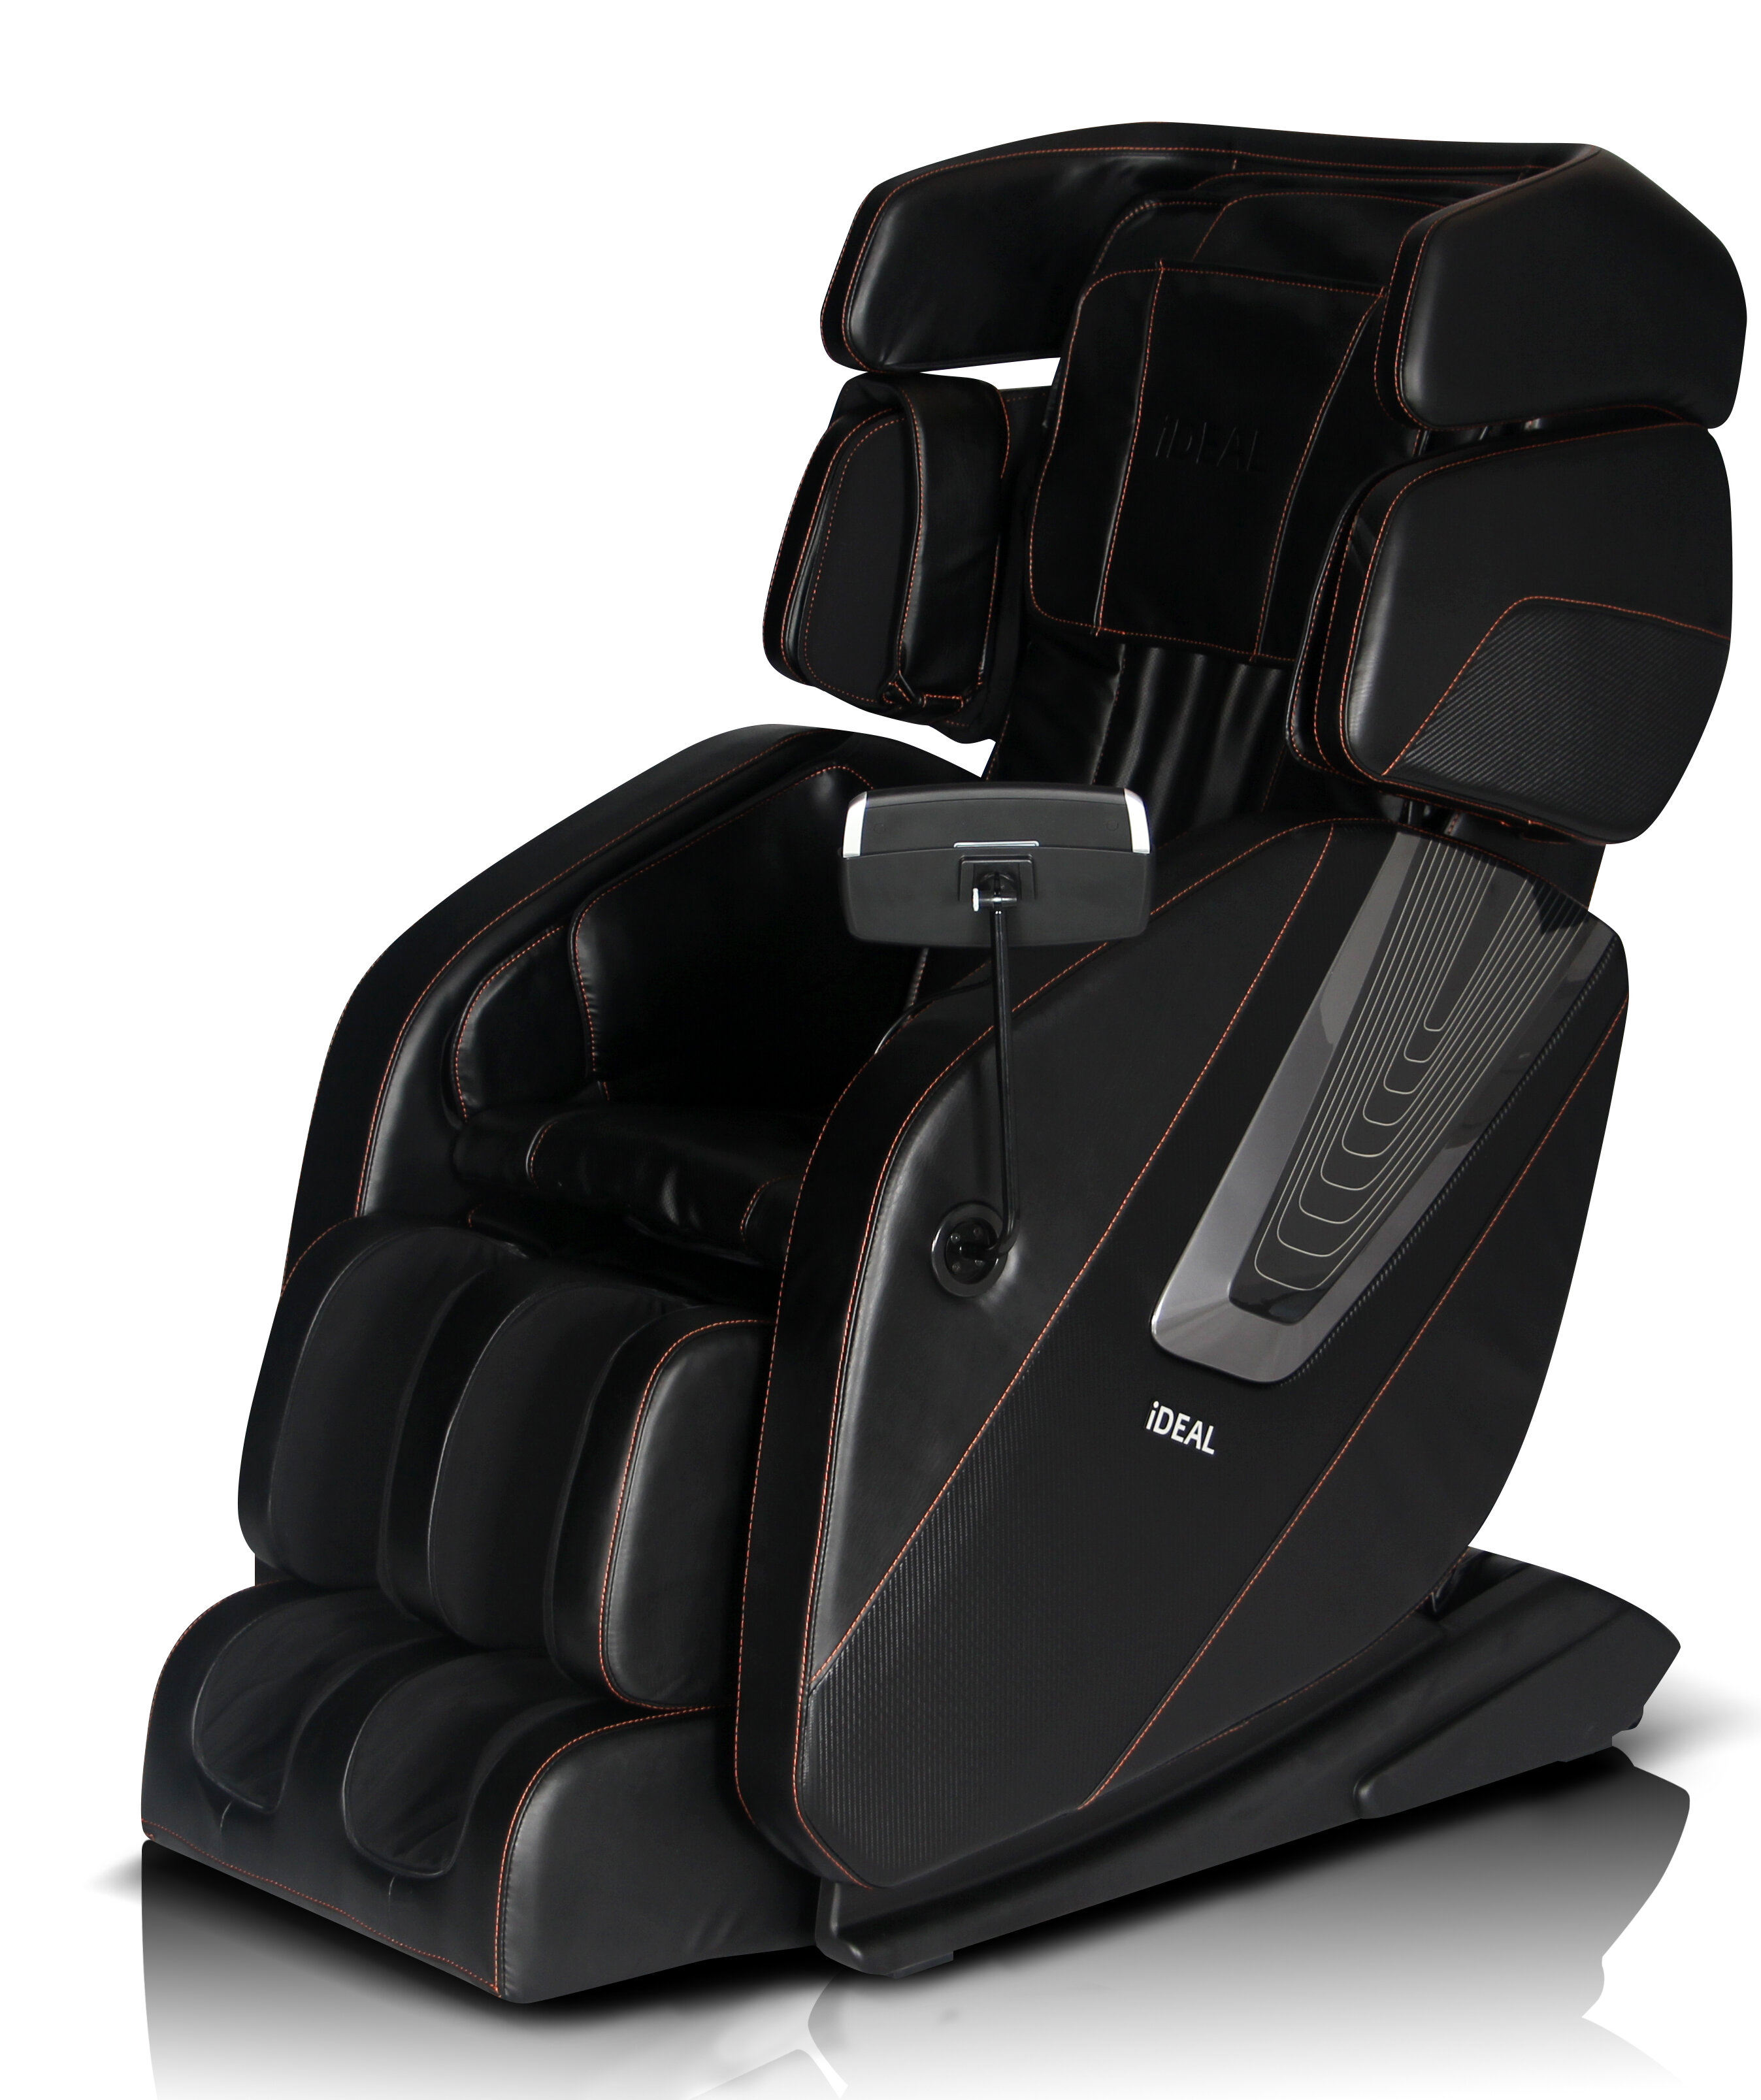 Ideal Massage Chair Reclining Adjustable Width Heated Full Body Massage Chair Reviews Wayfair